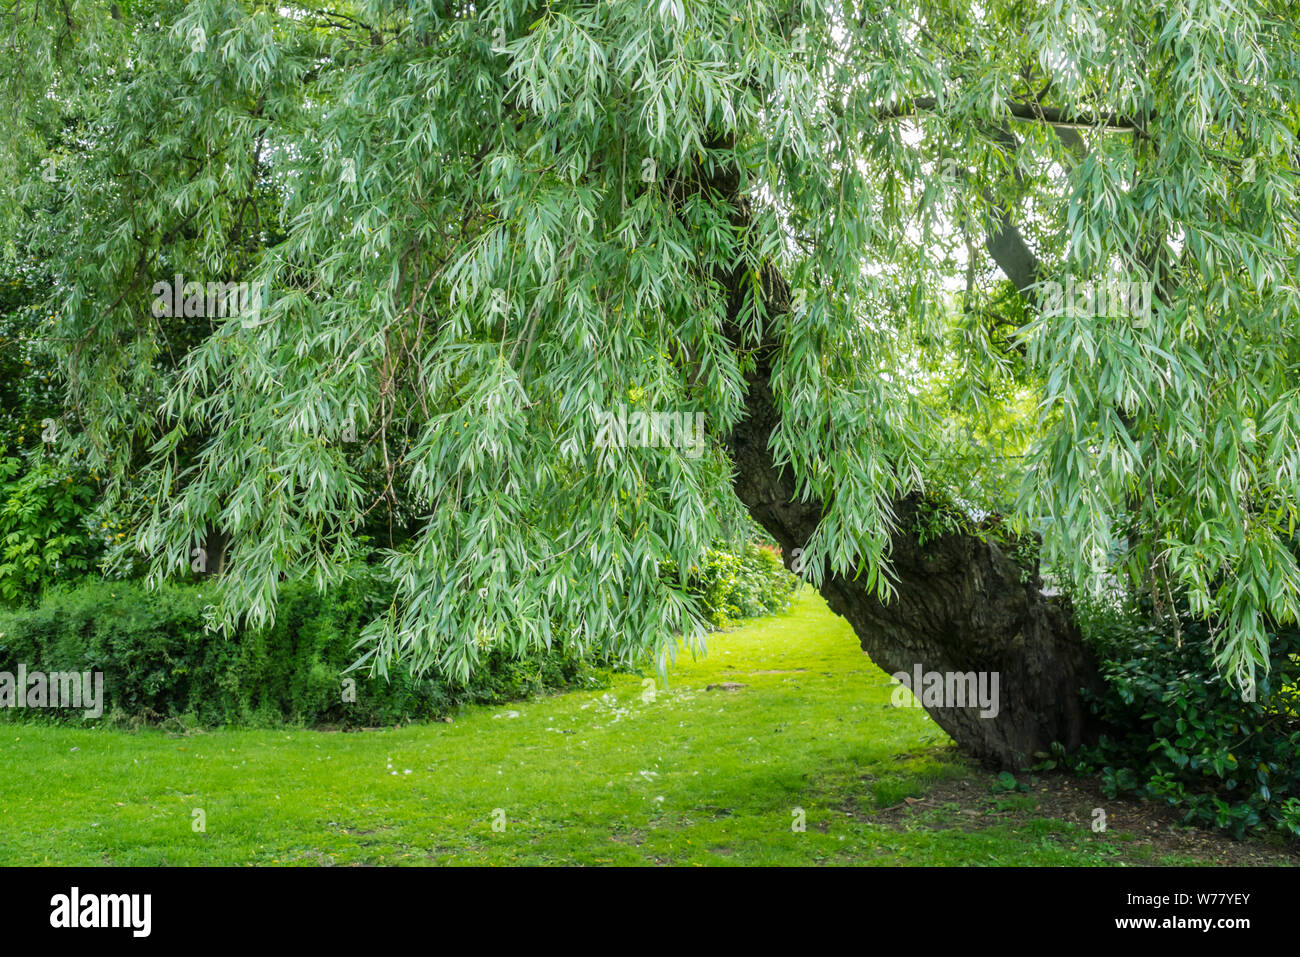 Un árbol de sauce llorón (Salix babylonica) situado en un parque público en el Reino Unido Foto de stock